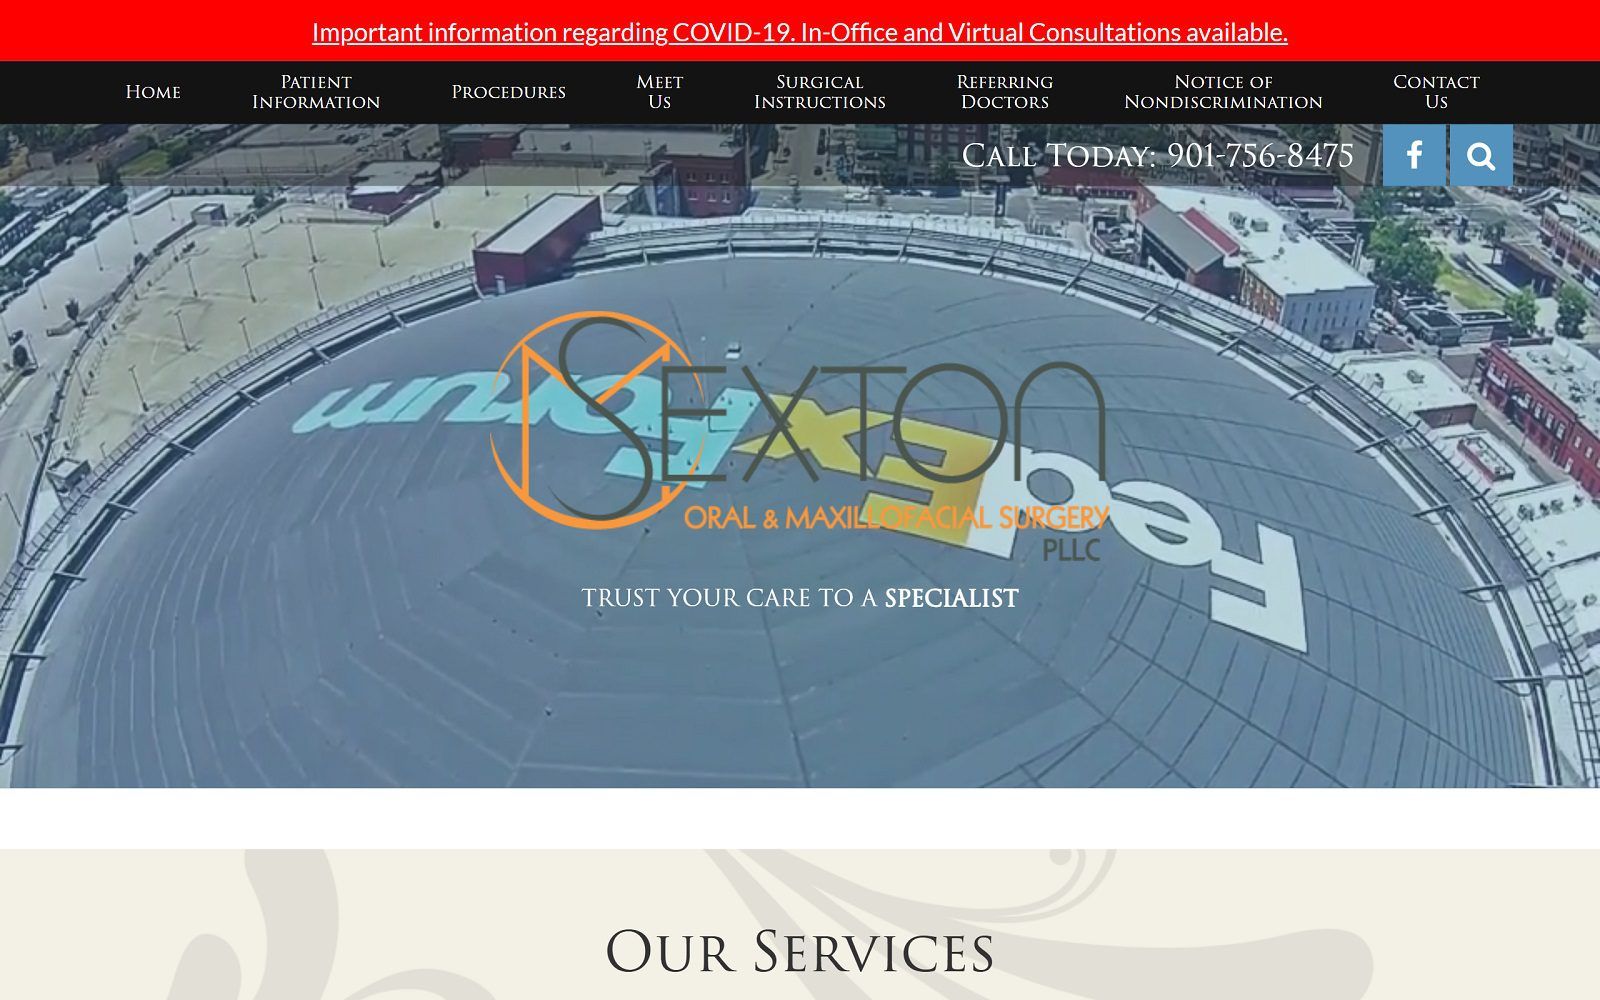 The screenshot of sexton oral & maxillofacial surgery, pllc website